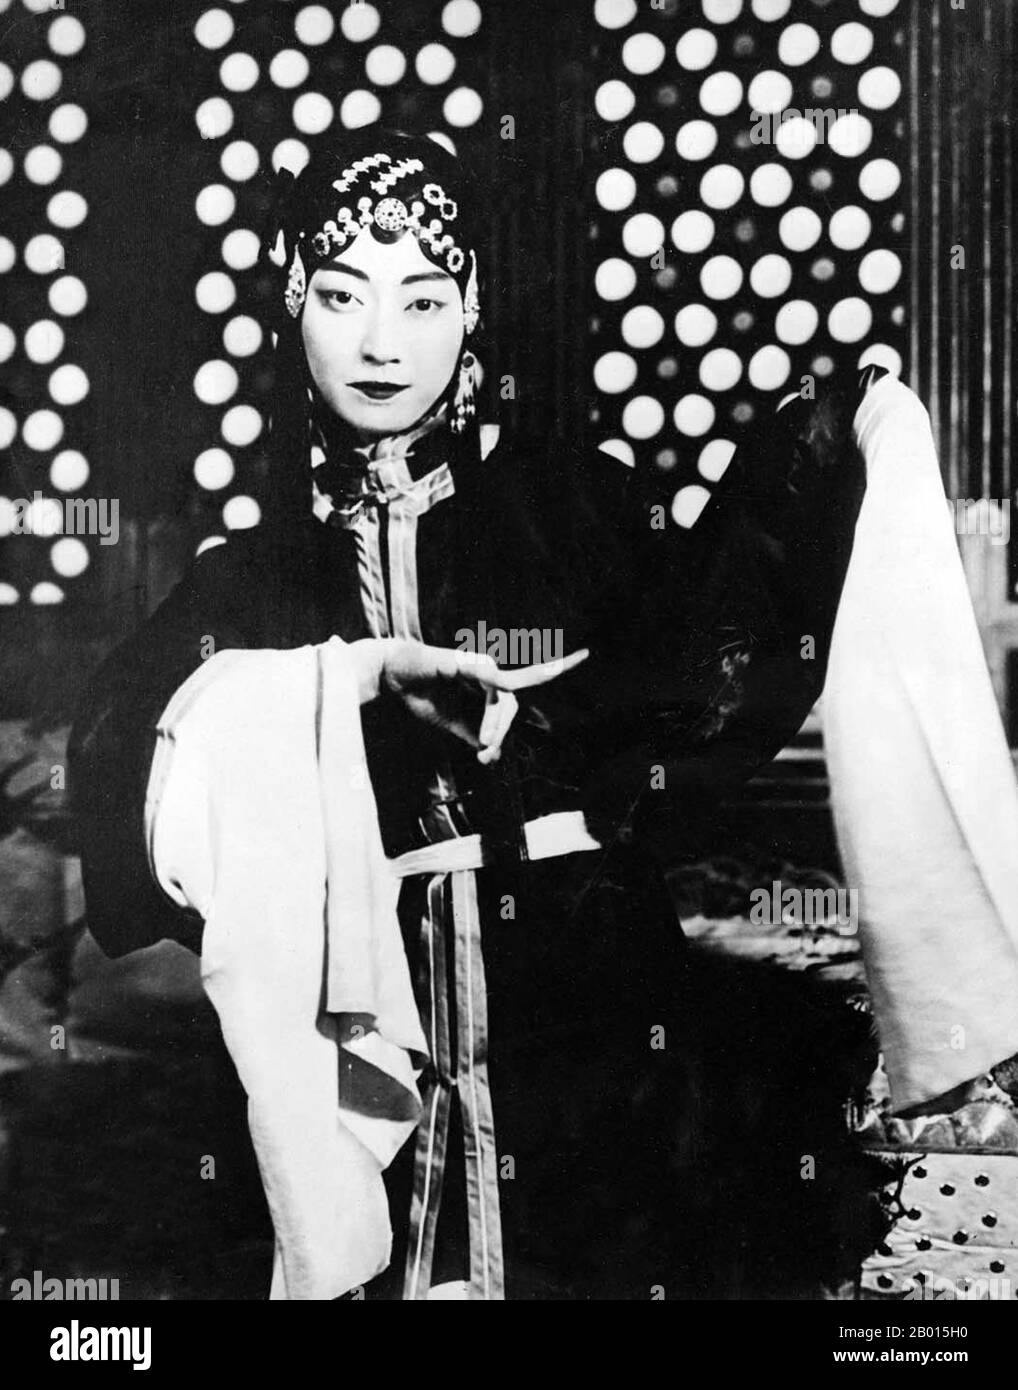 China: Mei Lanfang, berühmter Pekinger Opernkünstler (1894-1961), c. 1920-1929. Mei Lan wurde in Taizhou, Jiangsu, als Sohn einer Familie von Künstlern der Pekinger Oper und Kunqu geboren. Sein Bühnendebüt gab er 1904 im Alter von 10 Jahren am Guanghe Theater. In seiner 50-jährigen Bühnenlaufbahn behielt er eine starke Kontinuität bei, während er immer an neuen Techniken arbeitete. Seine berühmtesten Rollen waren die der weiblichen Charaktere; die gekonnte Darstellung von Frauen gewann ihn internationale Anerkennung. Er spielte auch eine wichtige Rolle bei der Fortsetzung der Aufführungstradition von Kunqu. Stockfoto